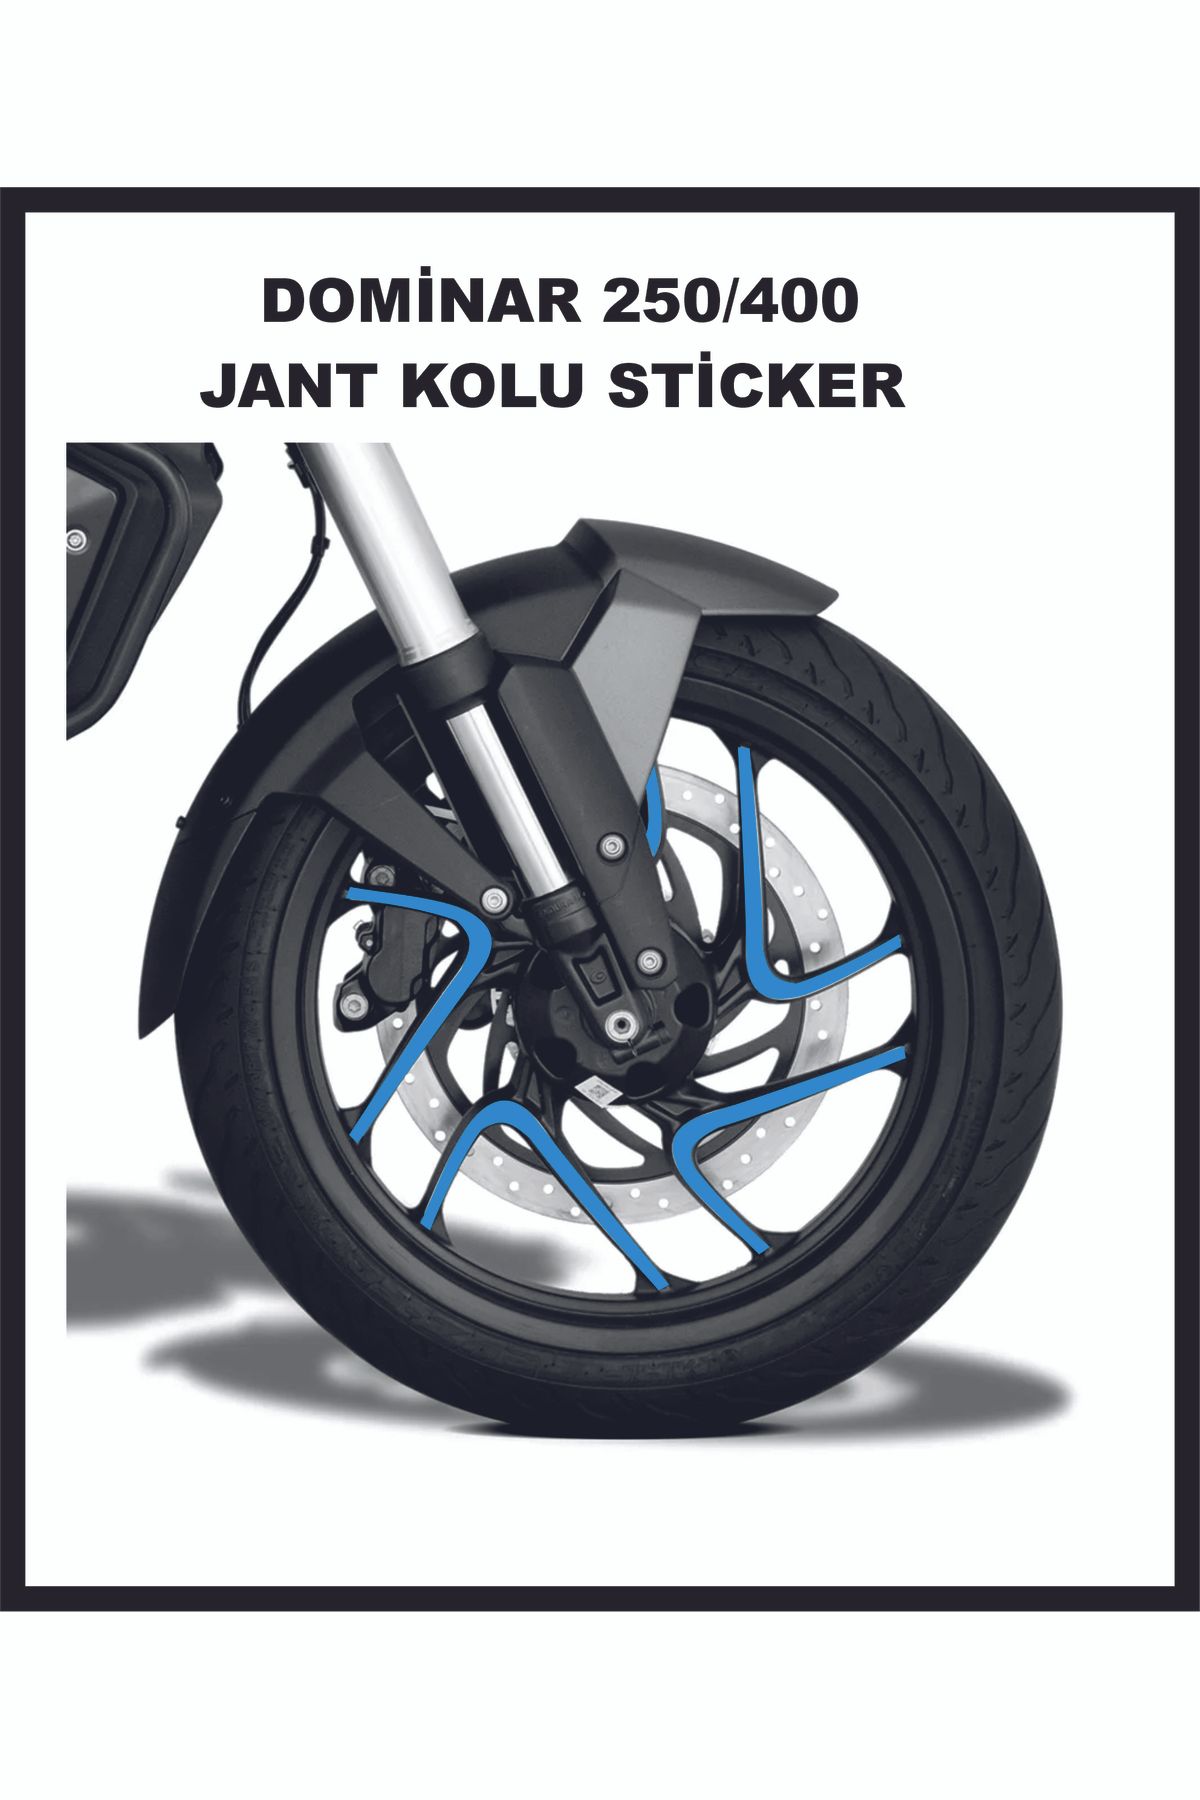 Bajaj Dominar 250/400 Jant Kolu Sticker